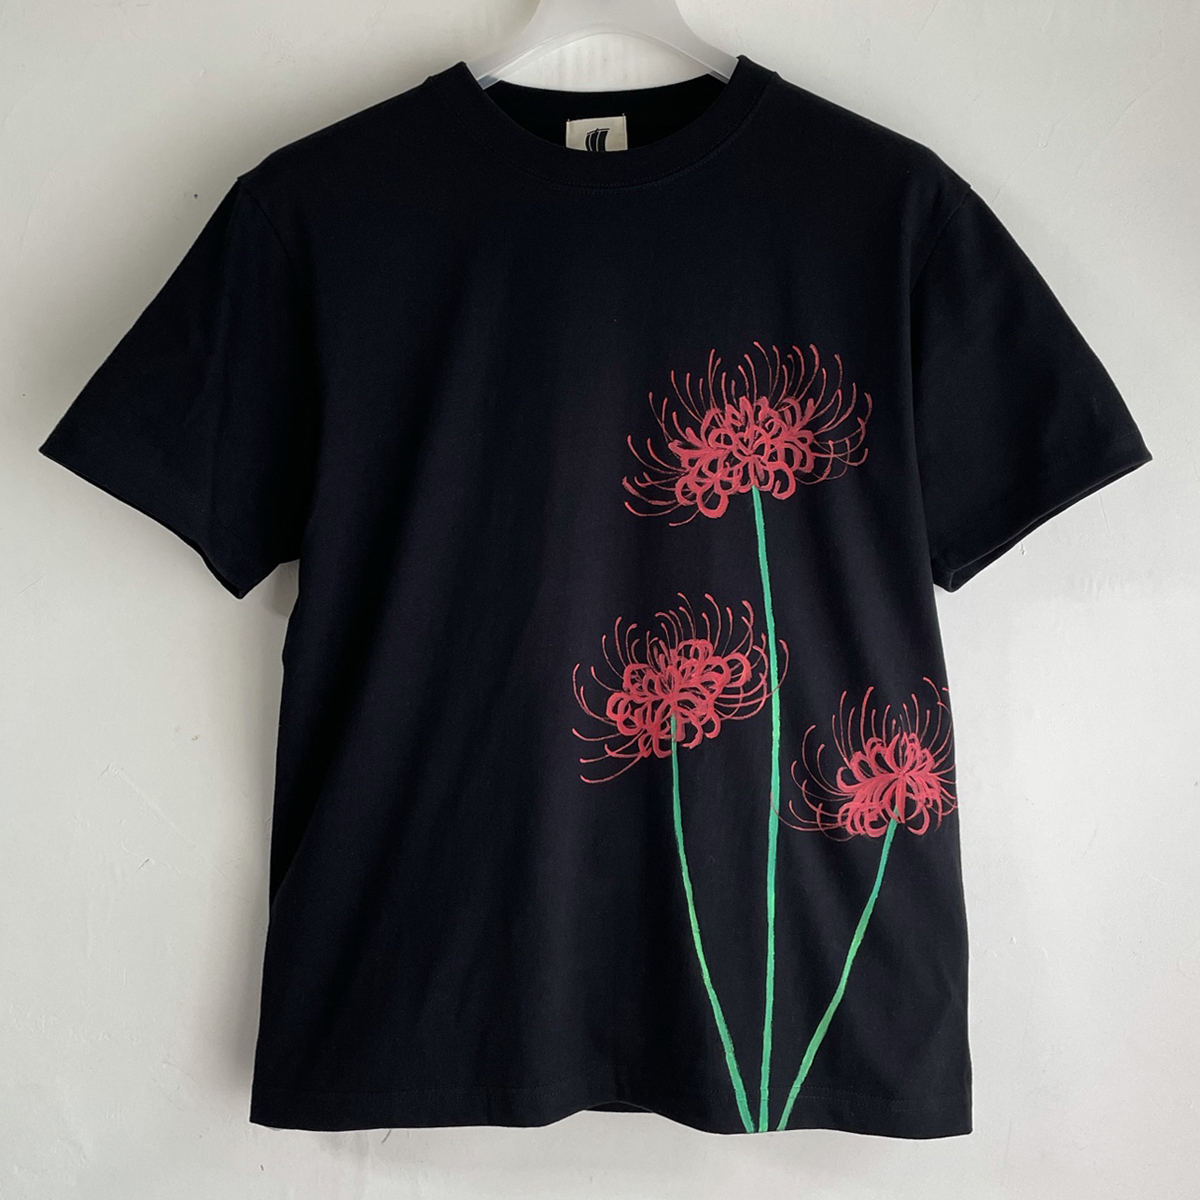 メンズ Tシャツ XXLサイズ 彼岸花柄Tシャツ 黒 ハンドメイド 手描きTシャツ 和柄 花柄 秋冬, XLサイズ以上, 丸首, 柄もの